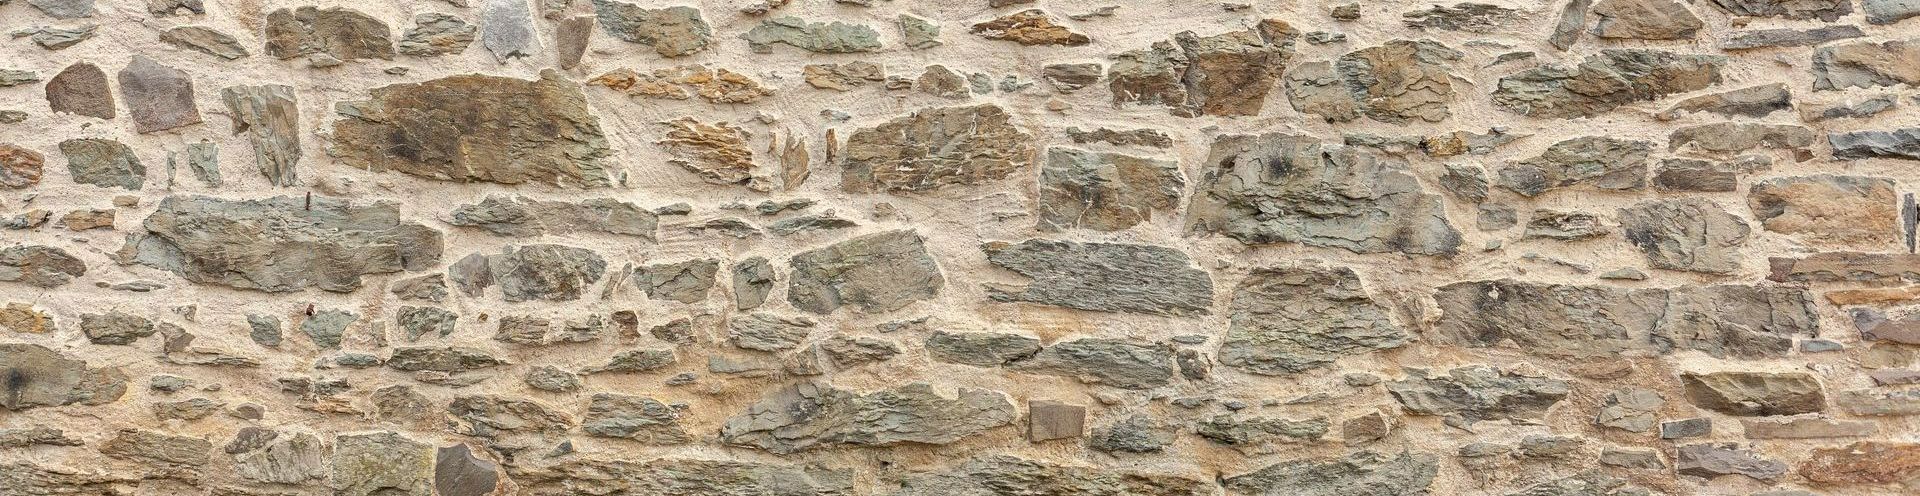 Un mur en pierres de parement naturelles